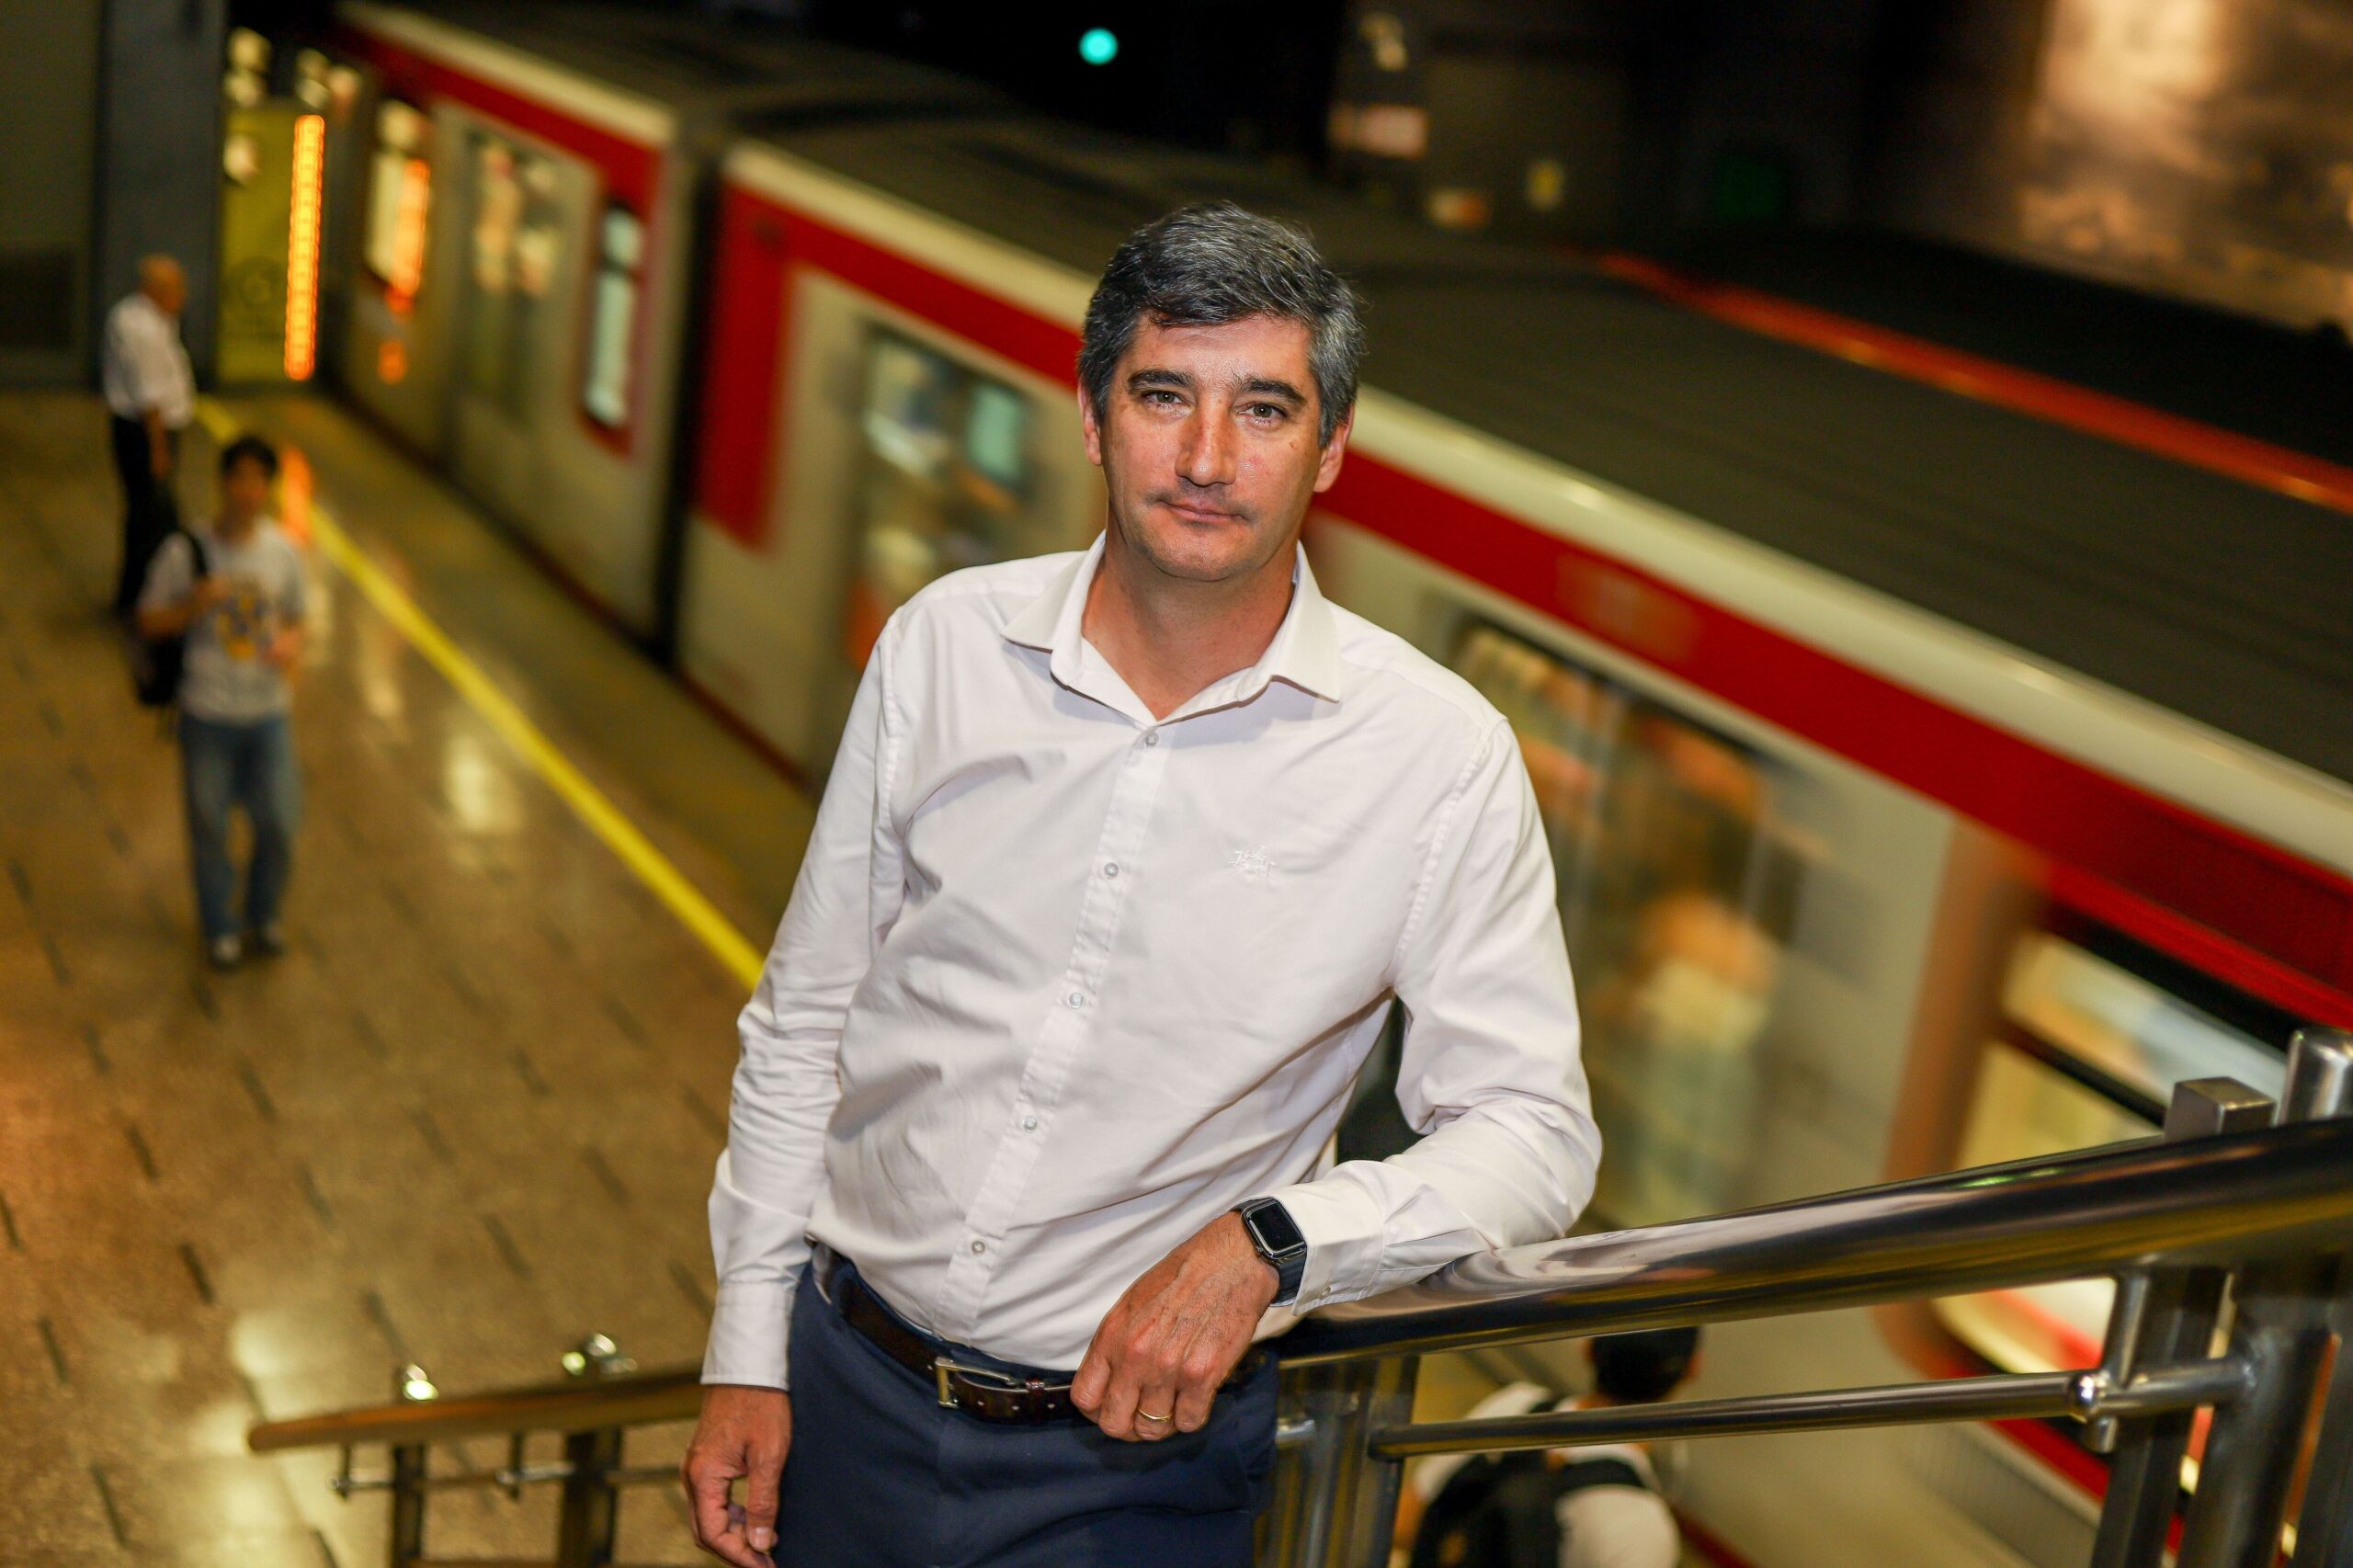 Súper lunes: Gerente general de Metro asegura funcionamiento total de los trenes con refuerzos y mayores frecuencias